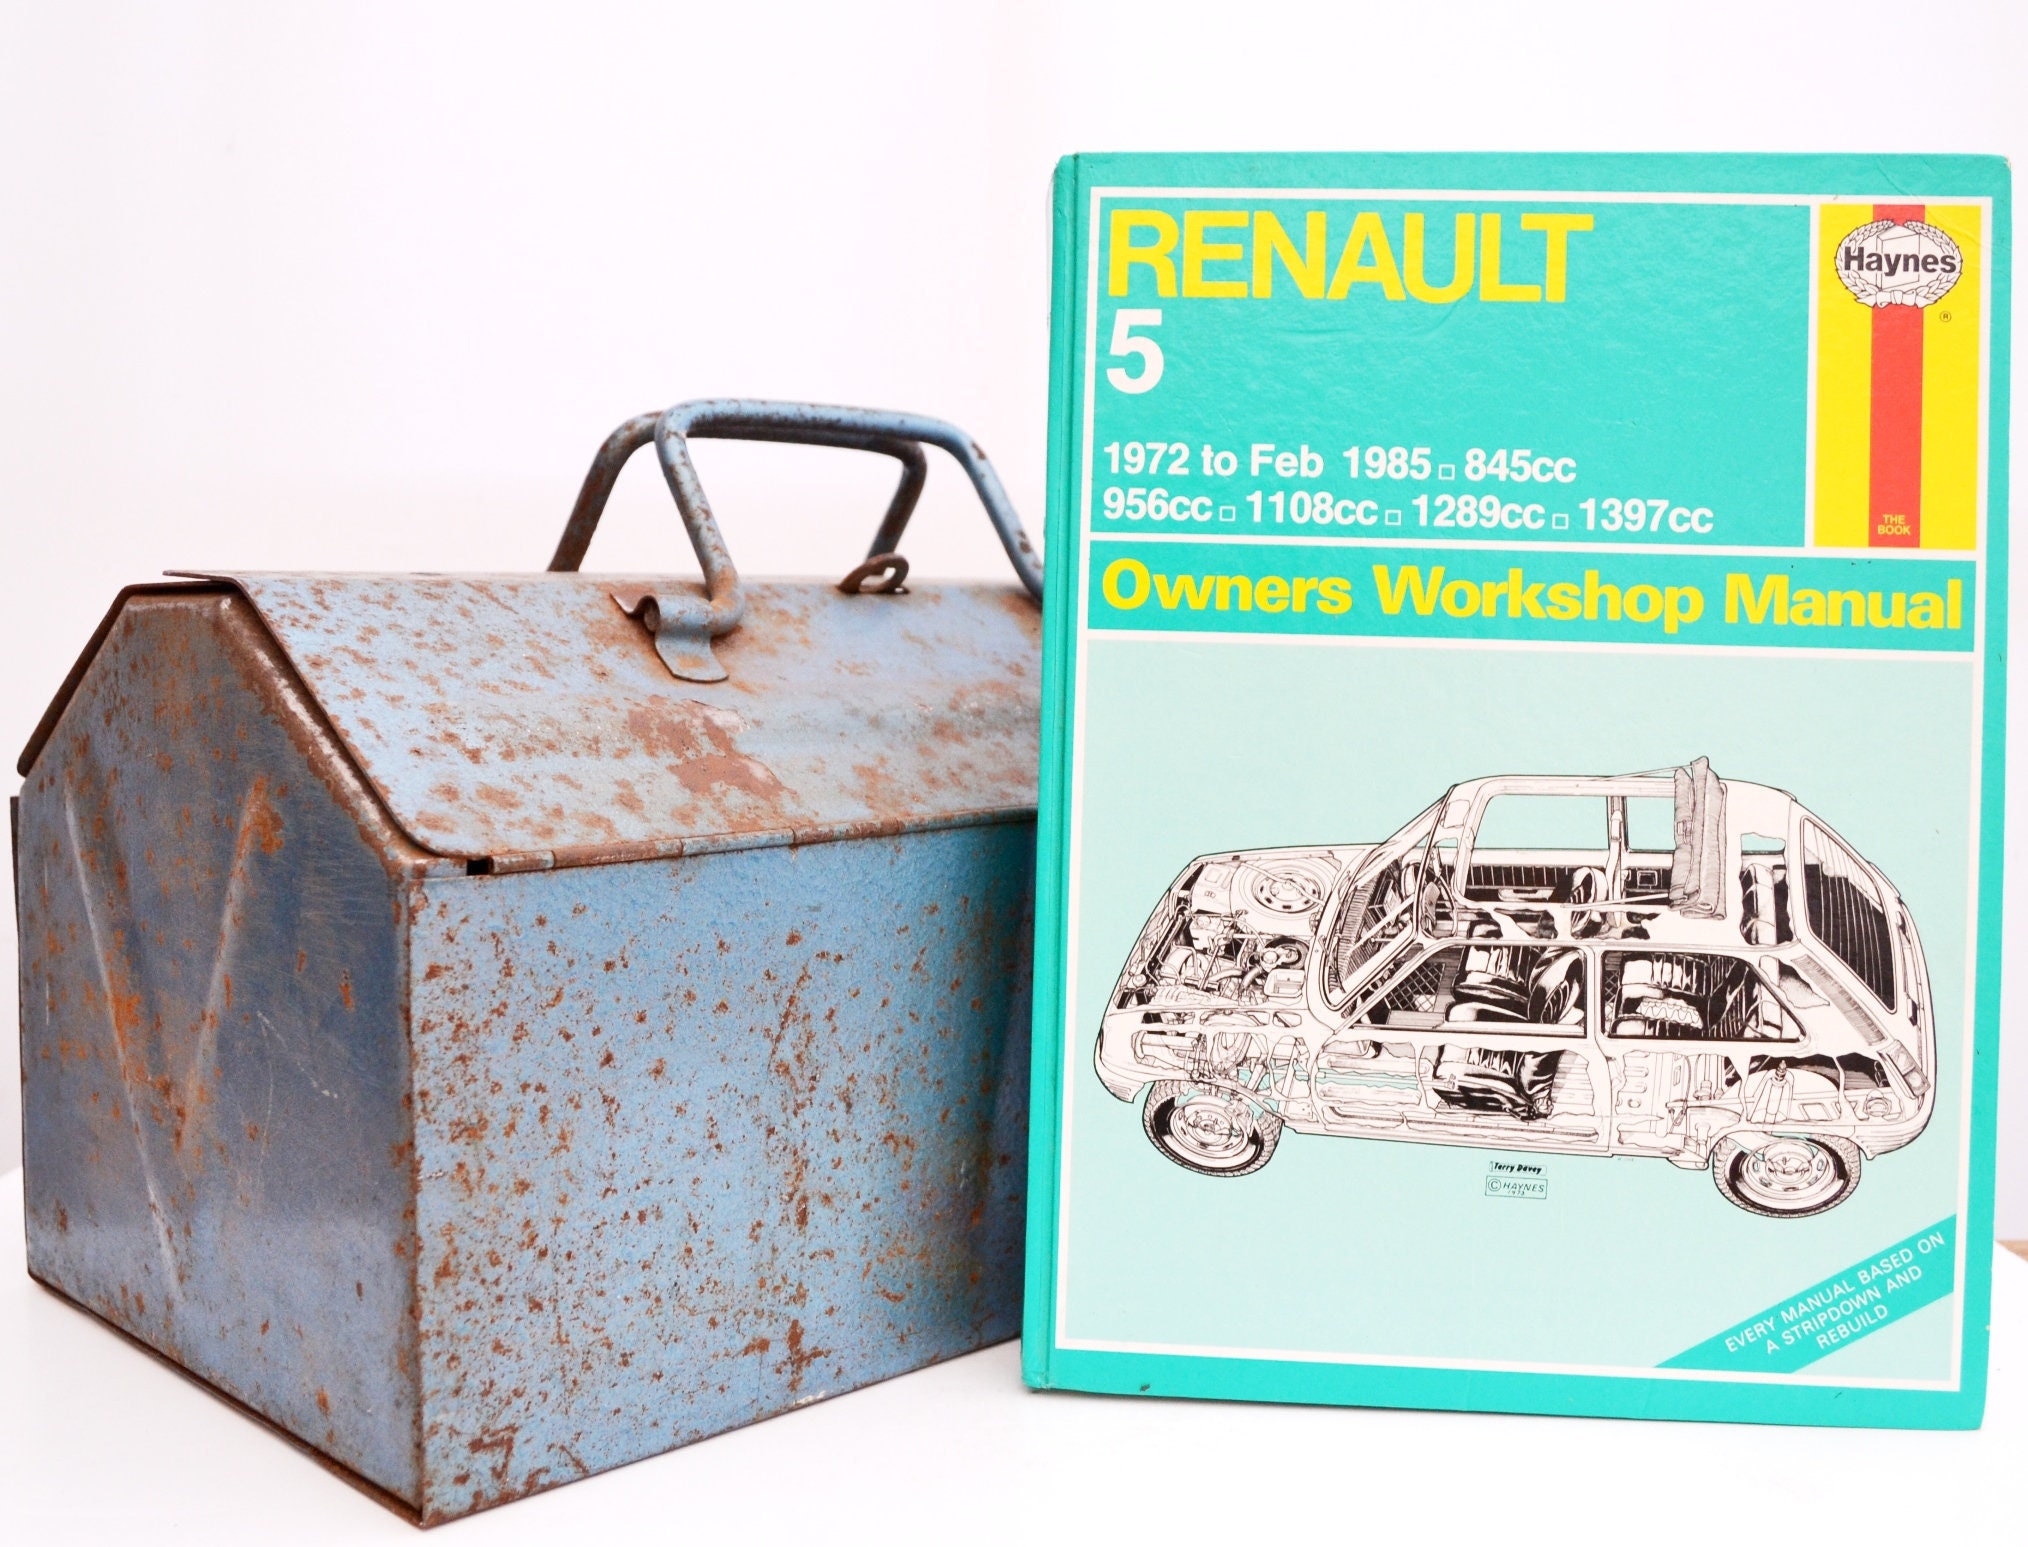 Haynes Renault Owners Workshop Manual Renault 5 Owners | Etsy